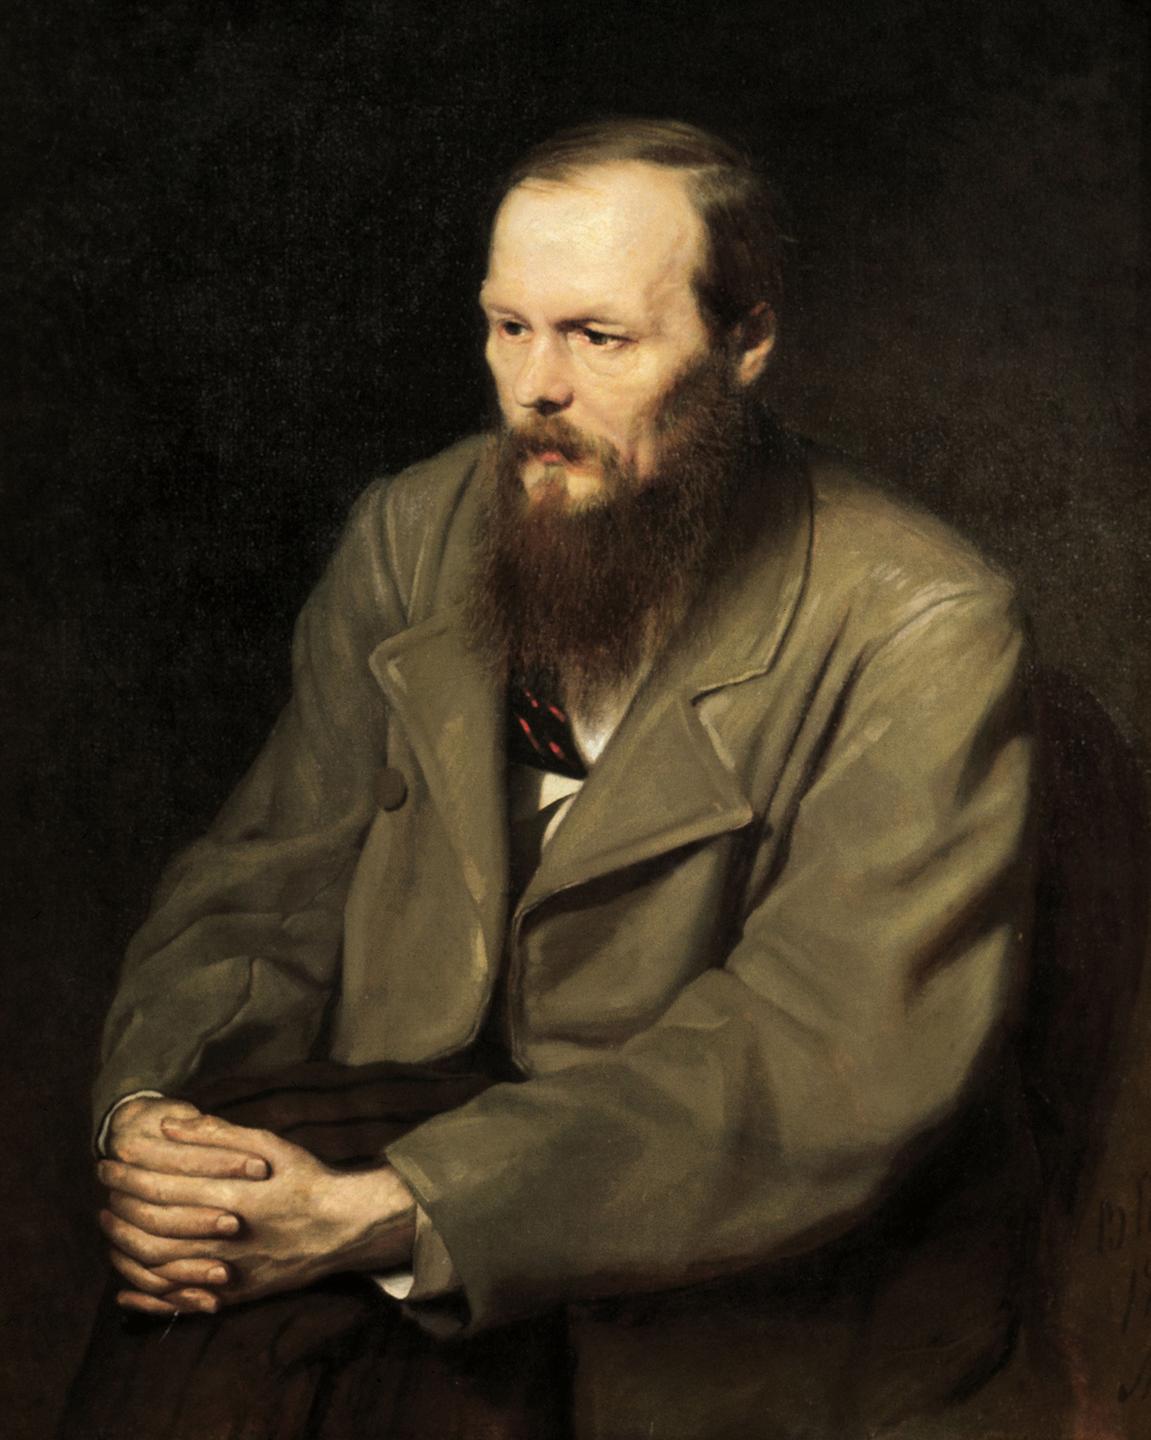 Der russische Dichter Fjodor Michailowitsch Dostojewski nach einem Porträt des Malers Perow. 